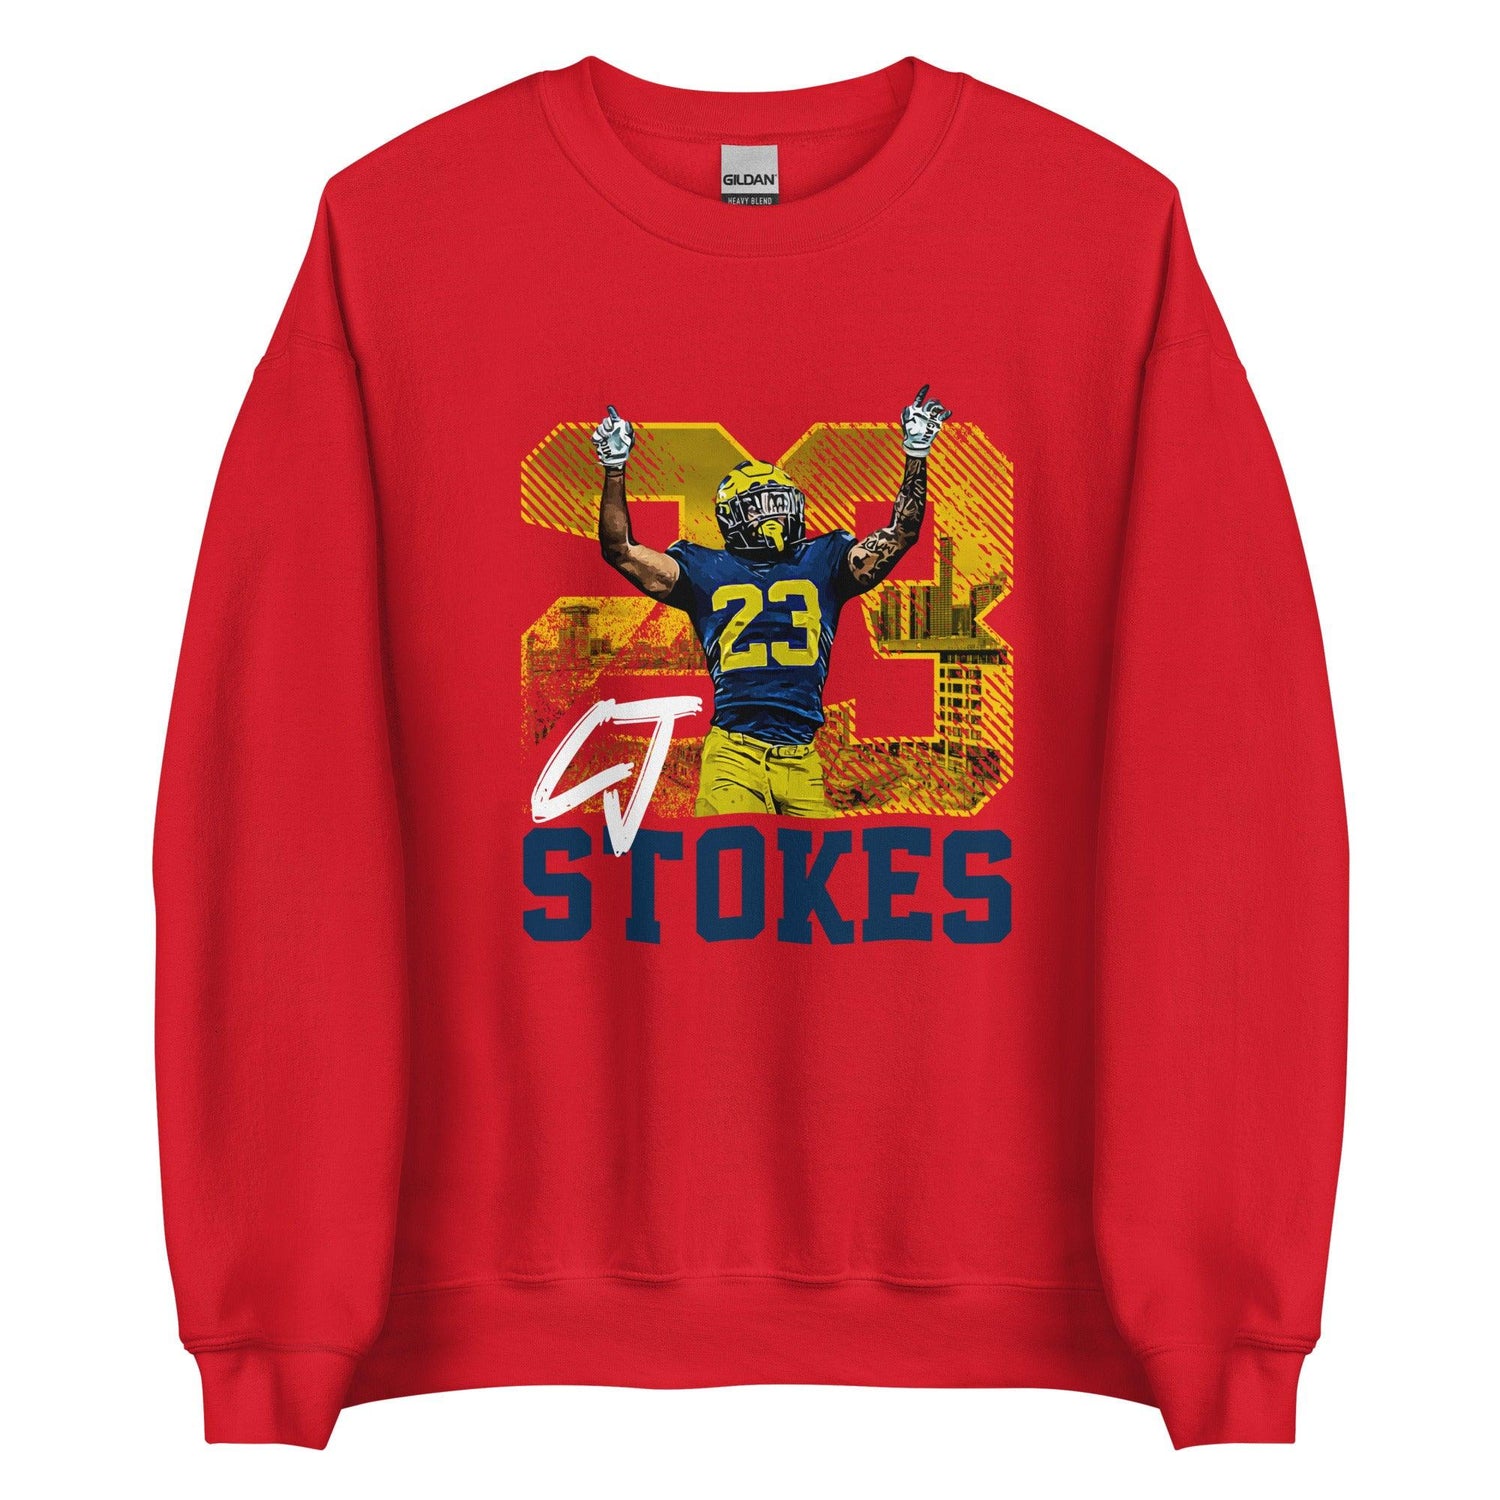 CJ Stokes "Gameday" Sweatshirt - Fan Arch